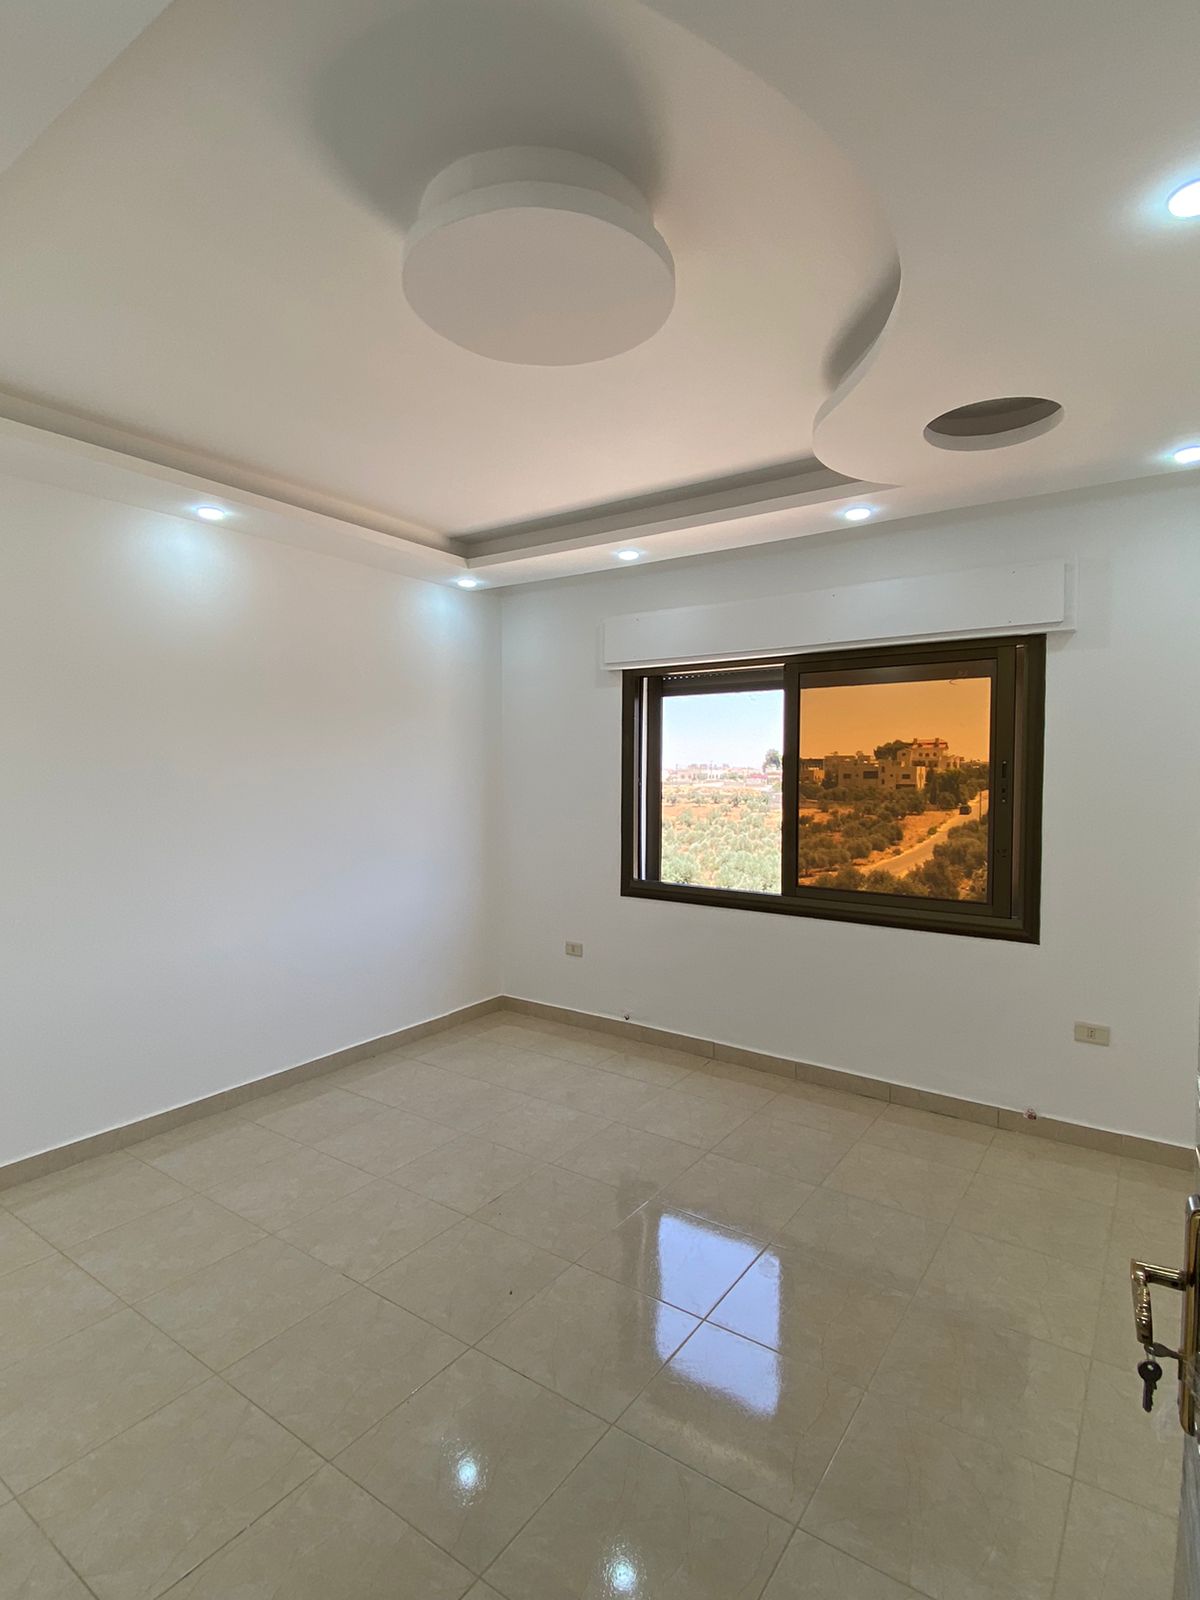 شقة سوبر ديلوكس طابق اول مساحة 180 م للبيع في شفا بدران